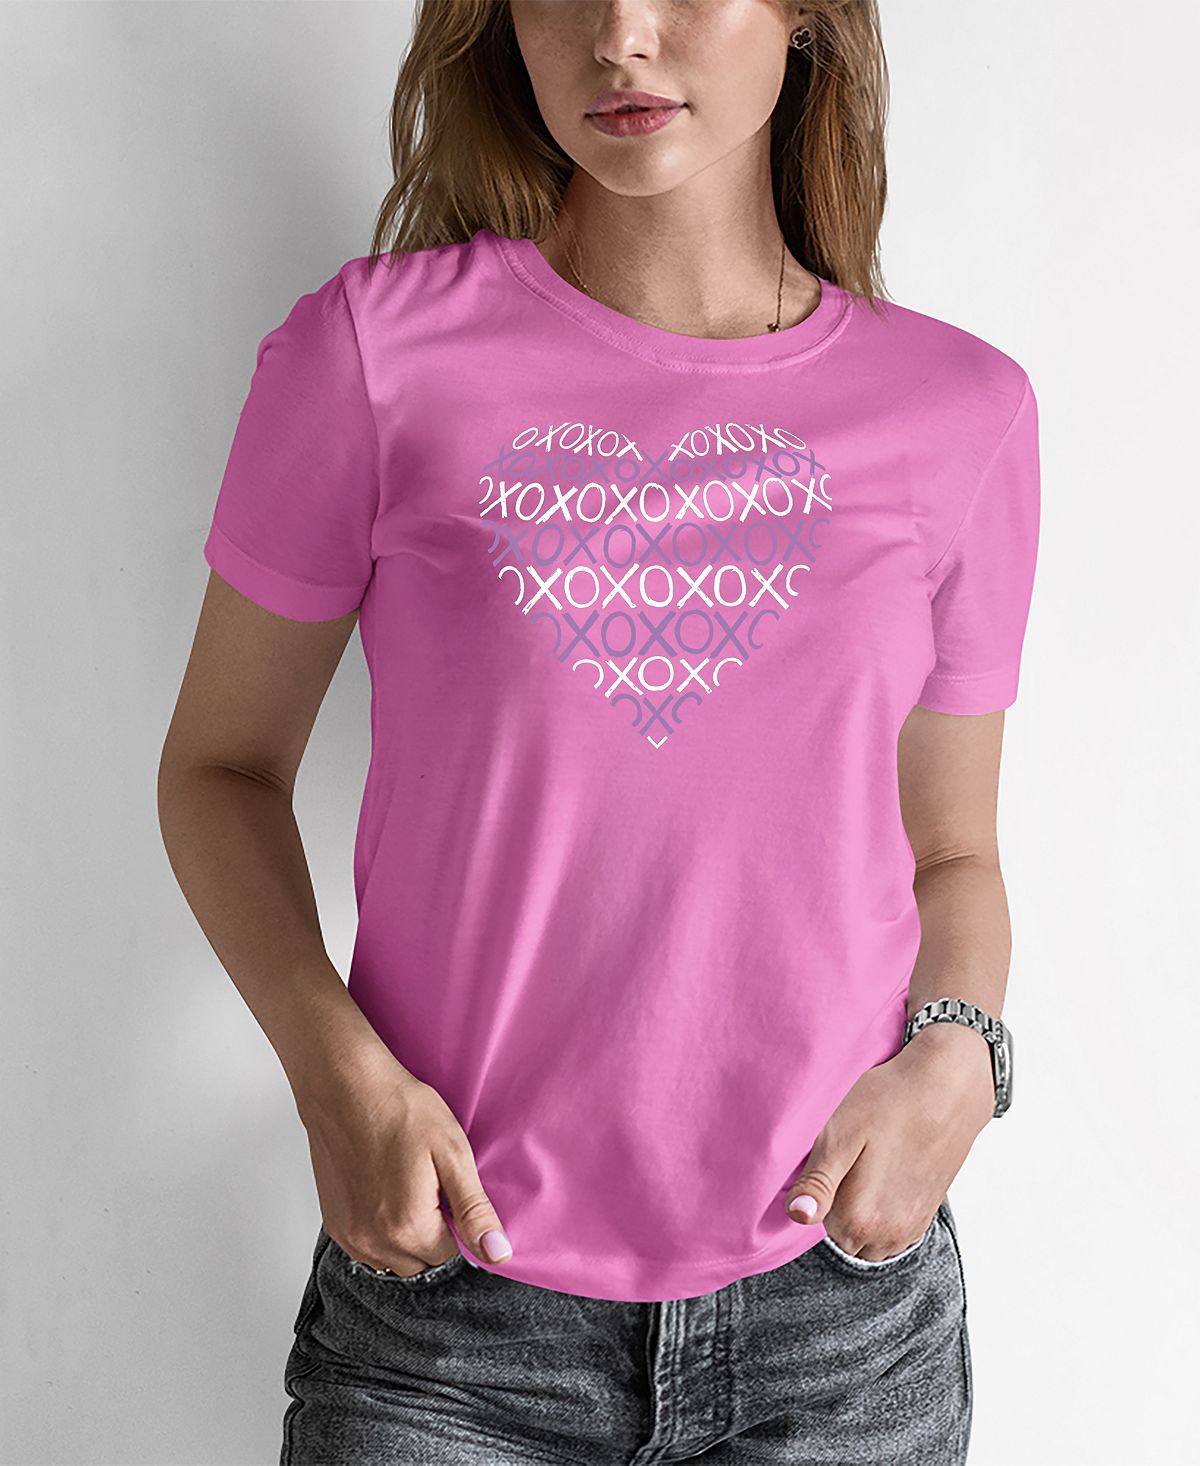 Женская футболка word art xoxo heart LA Pop Art, розовый женская футболка word art хамса la pop art розовый